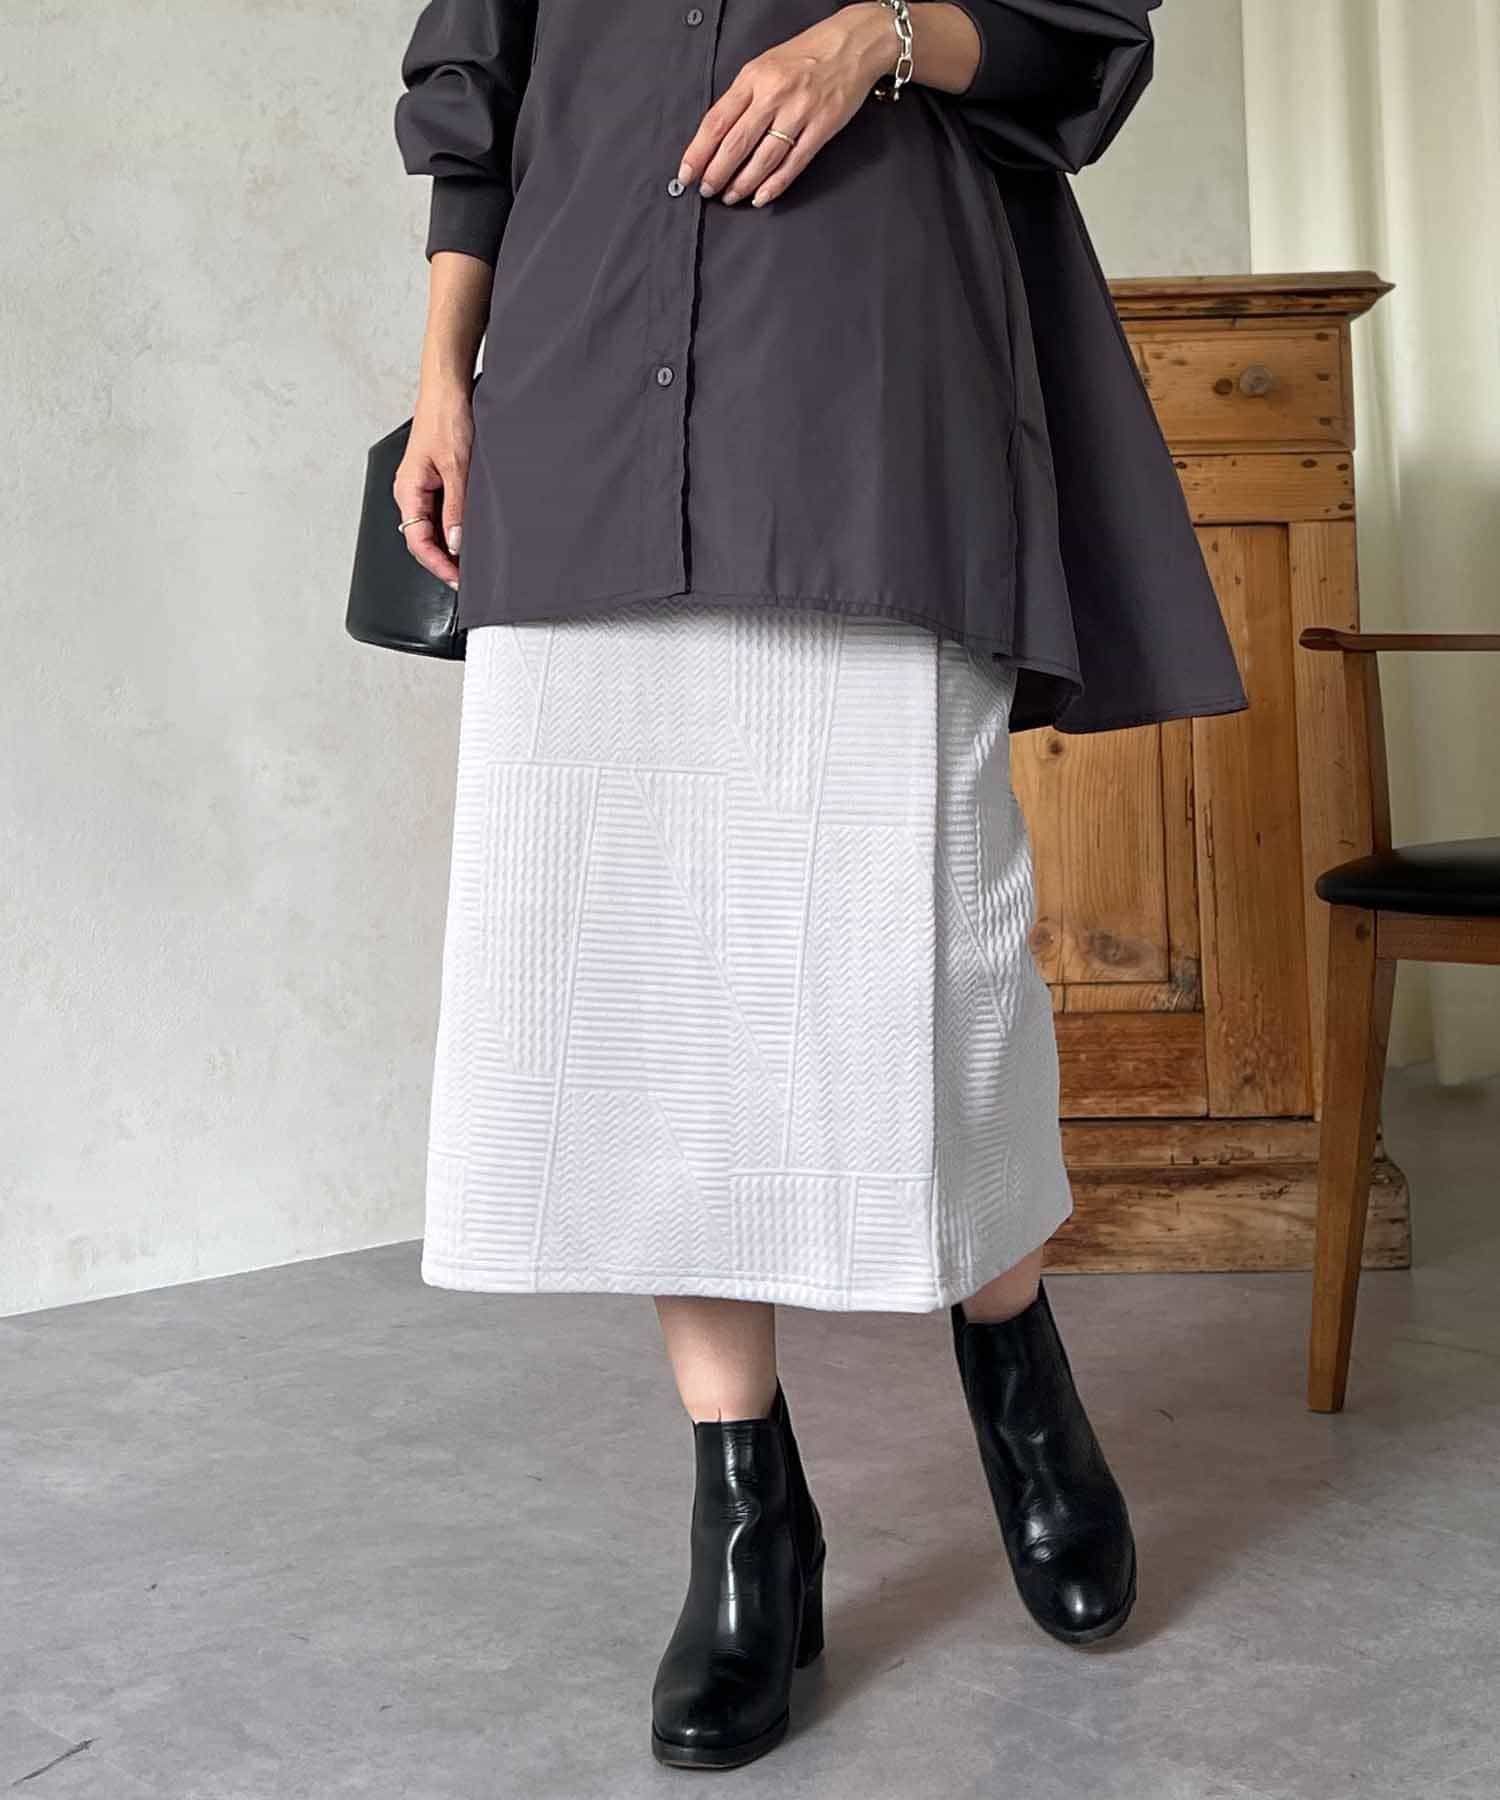 Croisiere(クロジエール) デザインIラインスカート